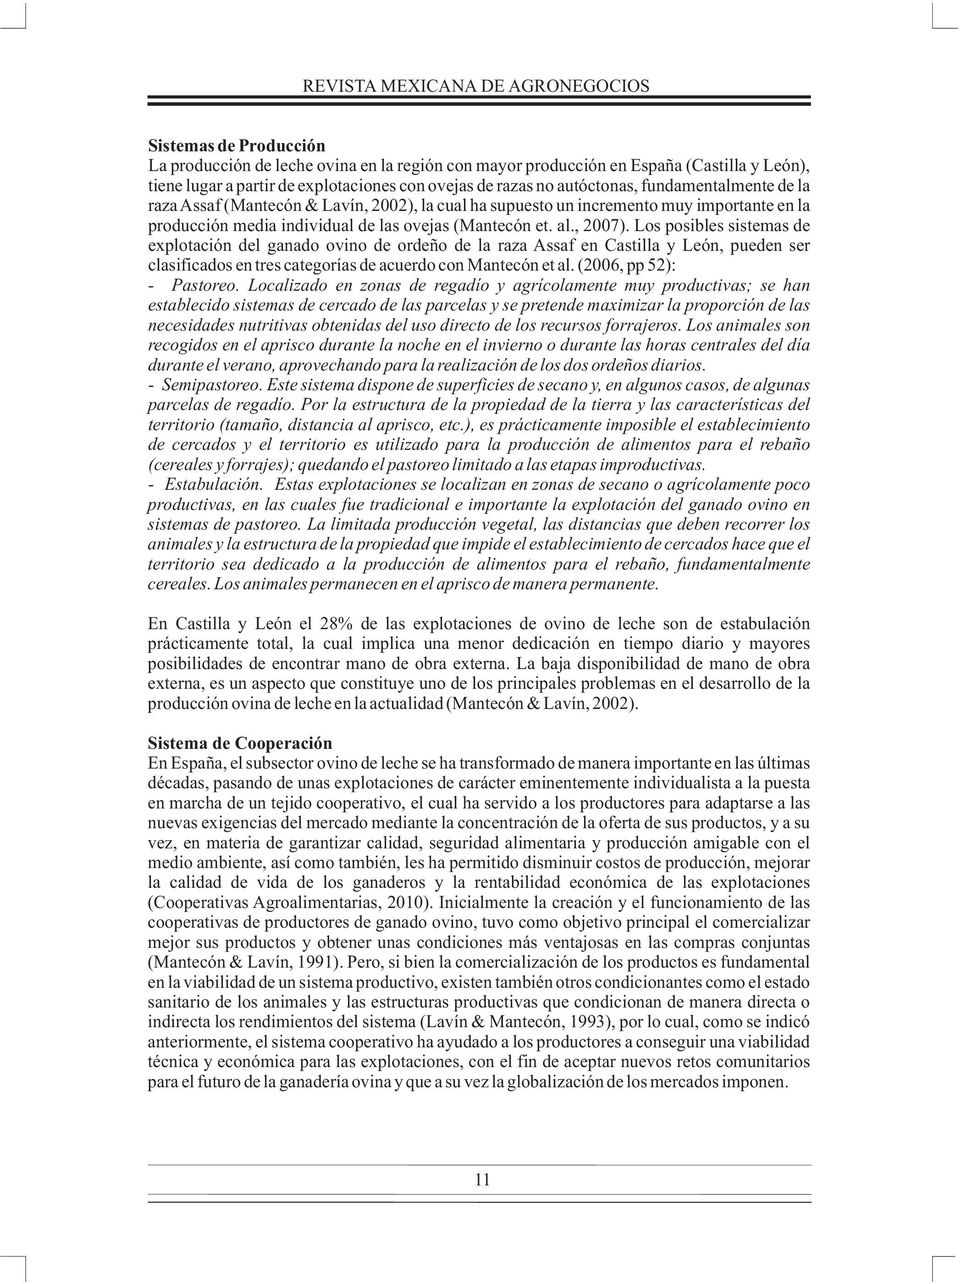 , 2007). Los posibles sistemas de explotación del ganado ovino de ordeño de la raza Assaf en Castilla y León, pueden ser clasificados en tres categorías de acuerdo con Mantecón et al.